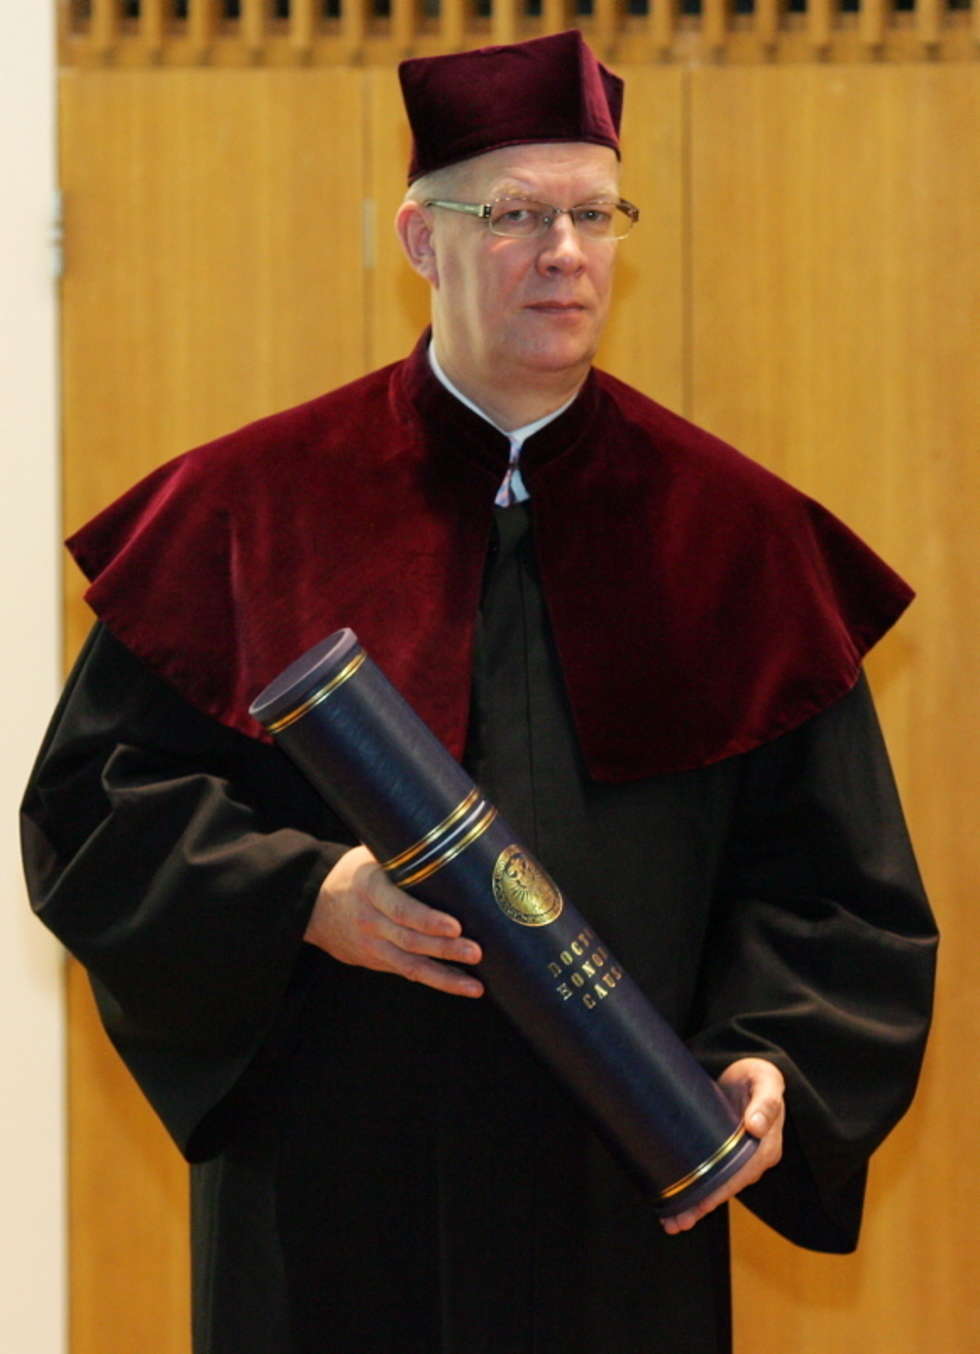  Valdis Zatlers z doktoratem honoris causa KUL  - Autor: Karol Zienkiewicz